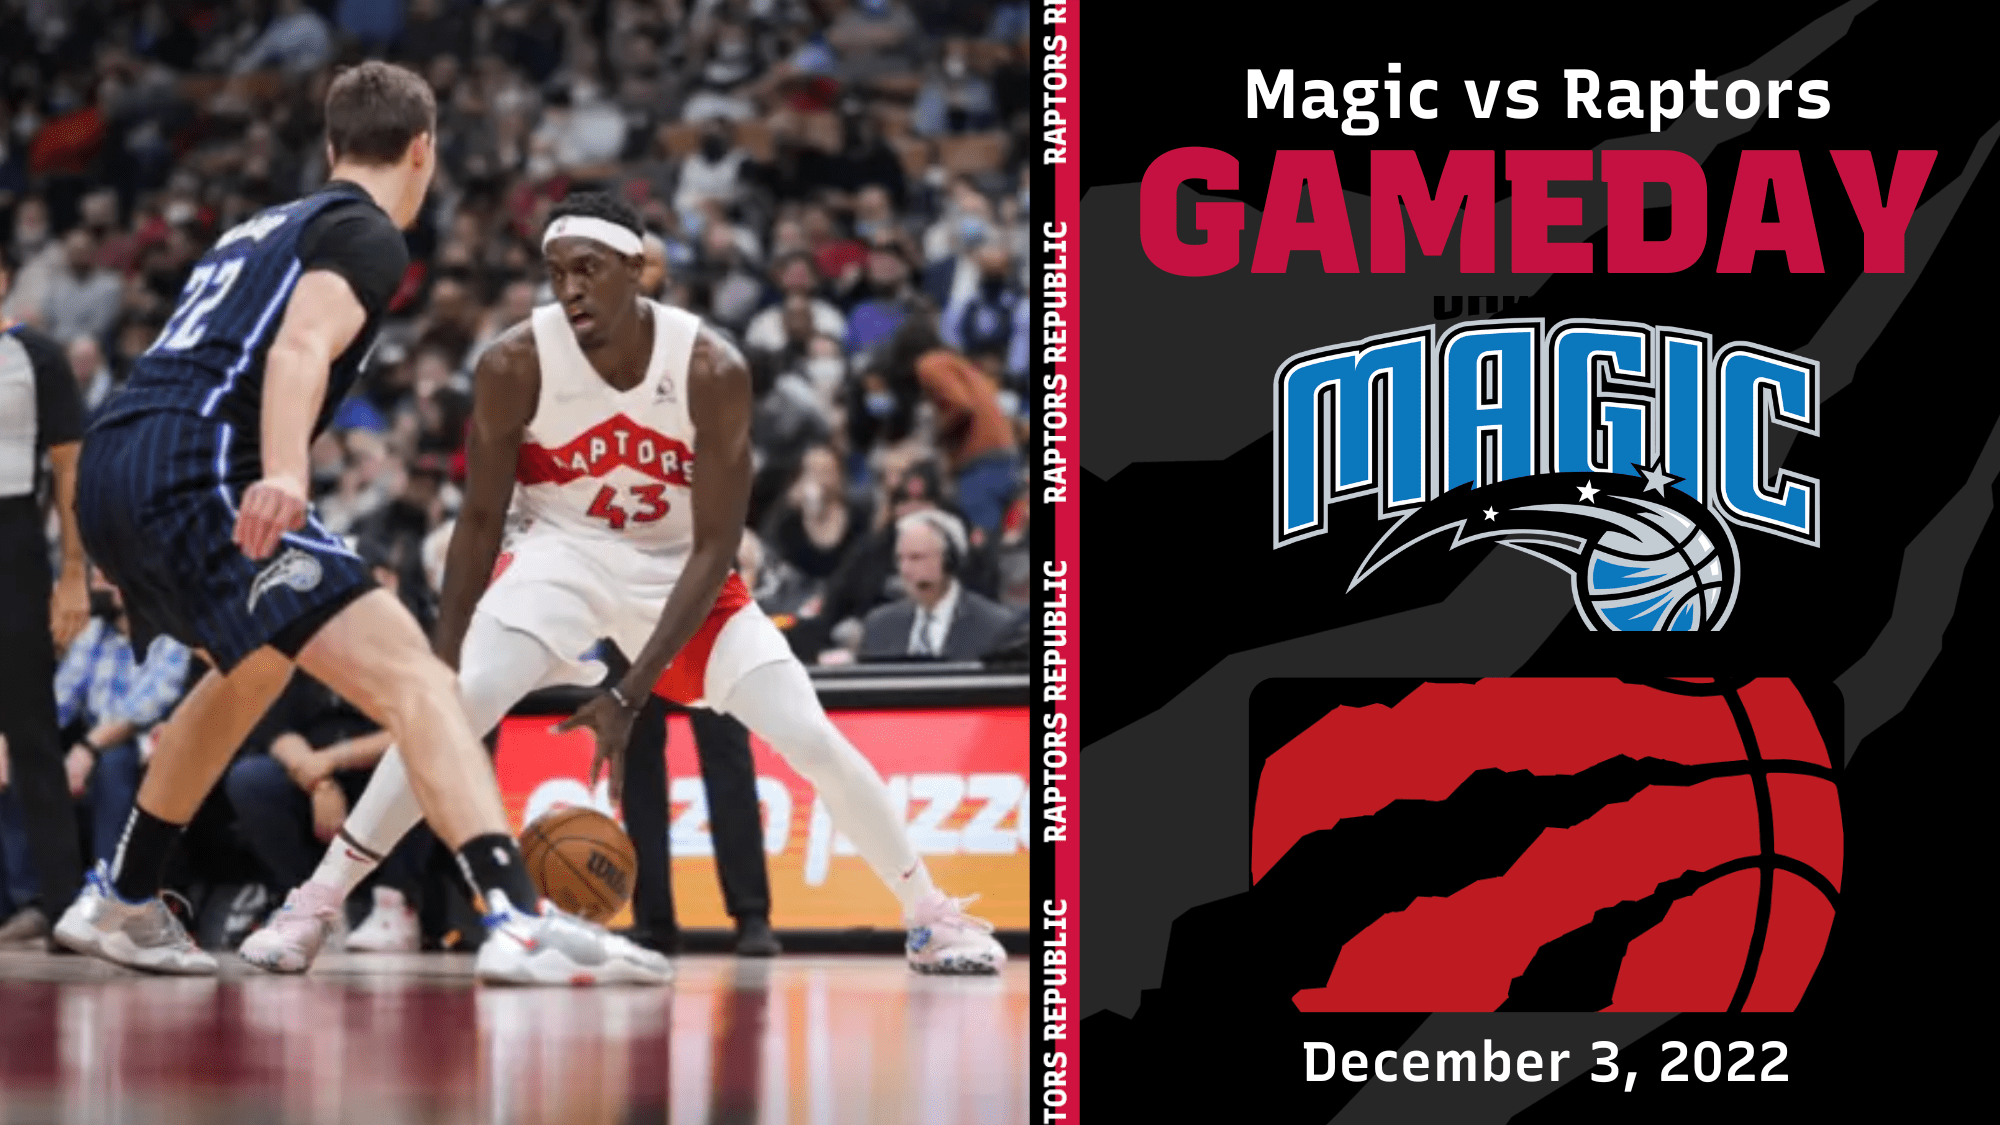 Gameday: Magic vs Raptors, December 3